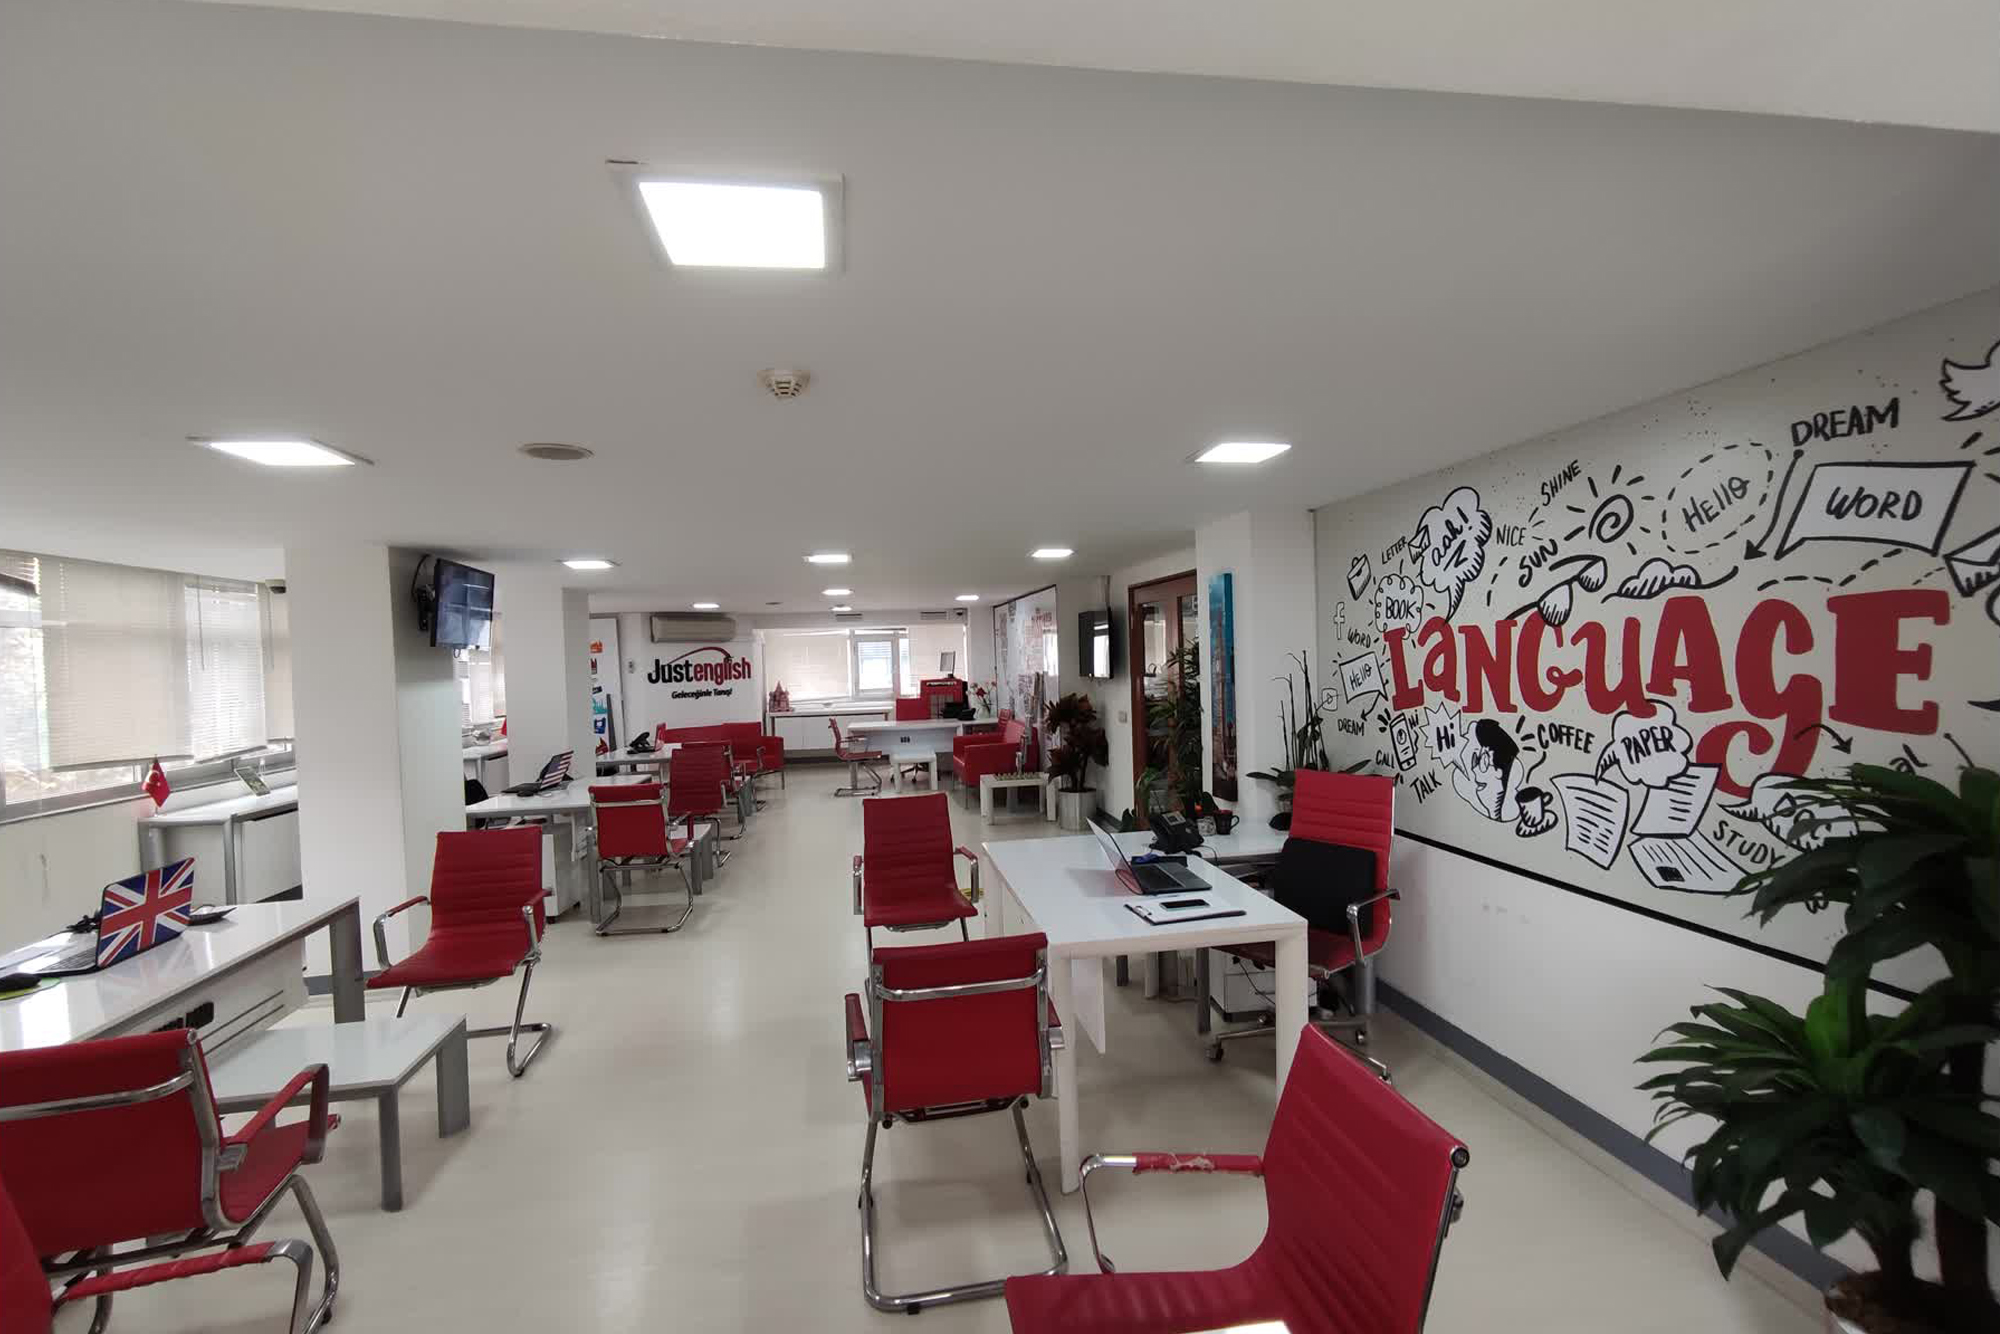 Just English Dil Okulları İstanbul/Bakırköy Şubesi